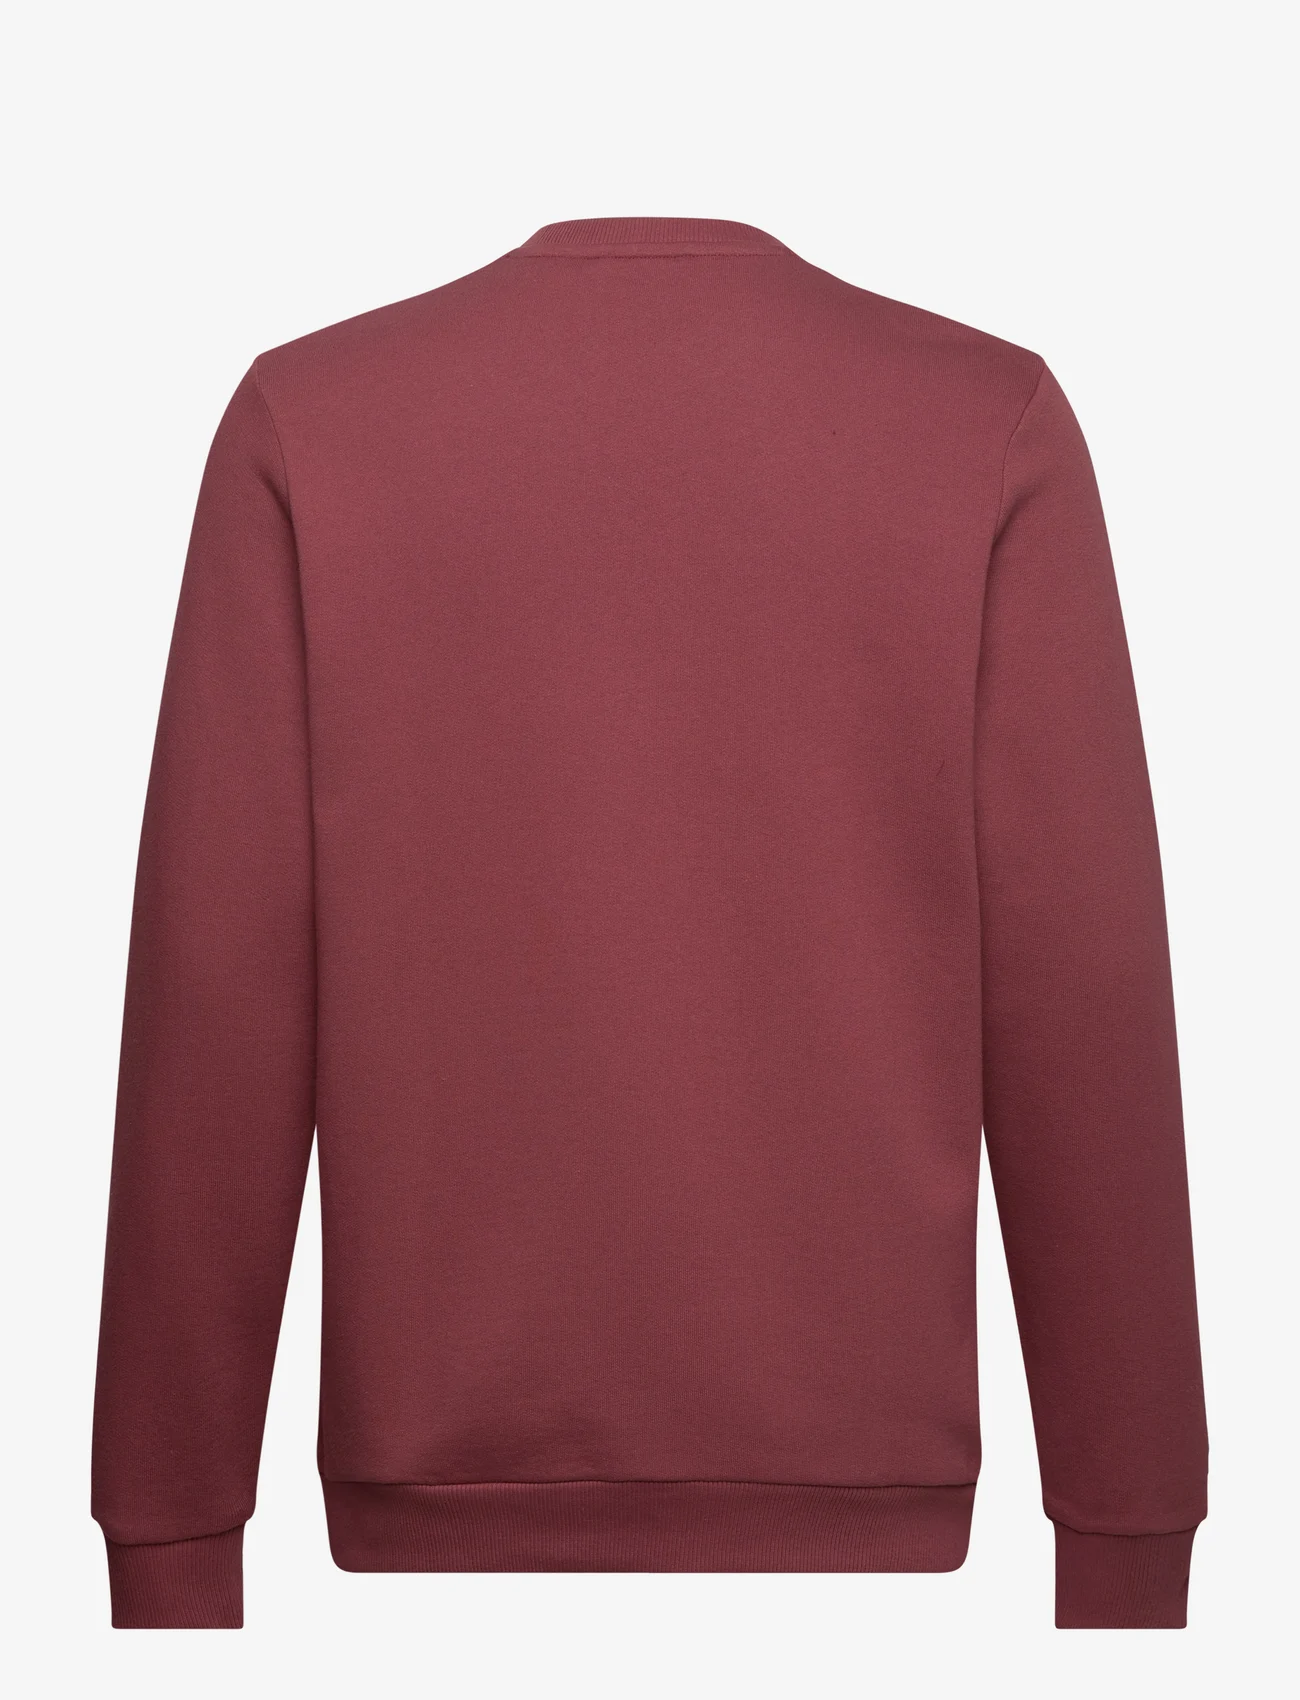 Lyle & Scott - Embroidered Crew Neck Sweatshirt - dressipluusid - x086 fletcher burgundy - 1